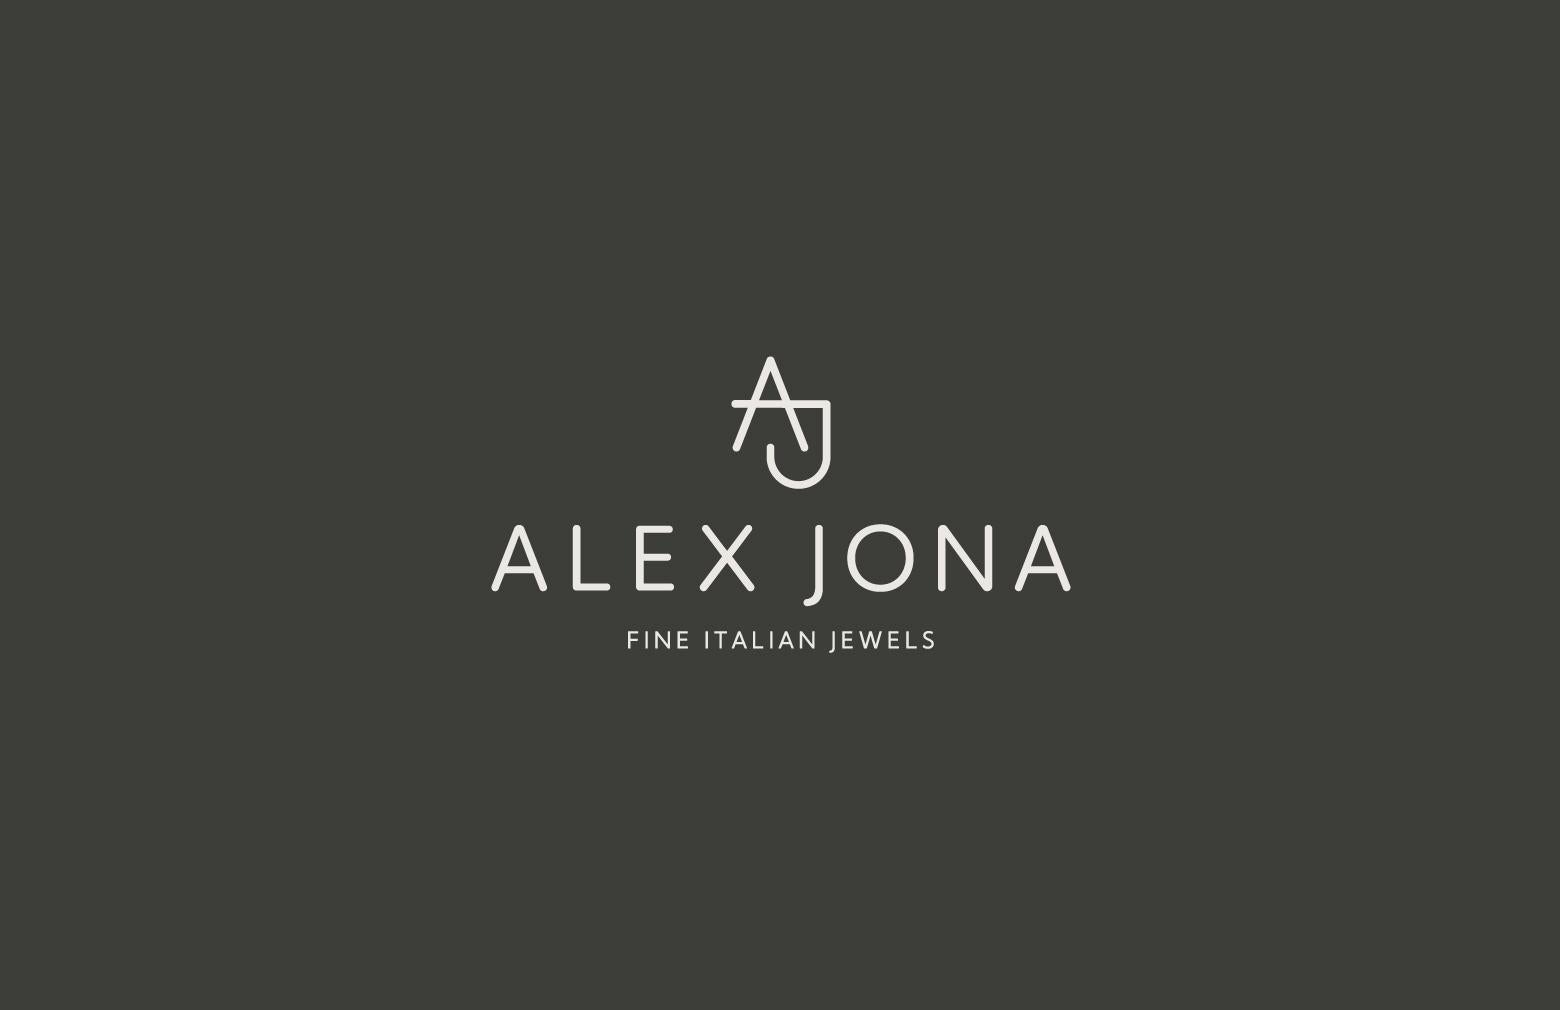 Alex Jona Blue and Green Enamel Sterling Silver Cufflinks For Sale 5